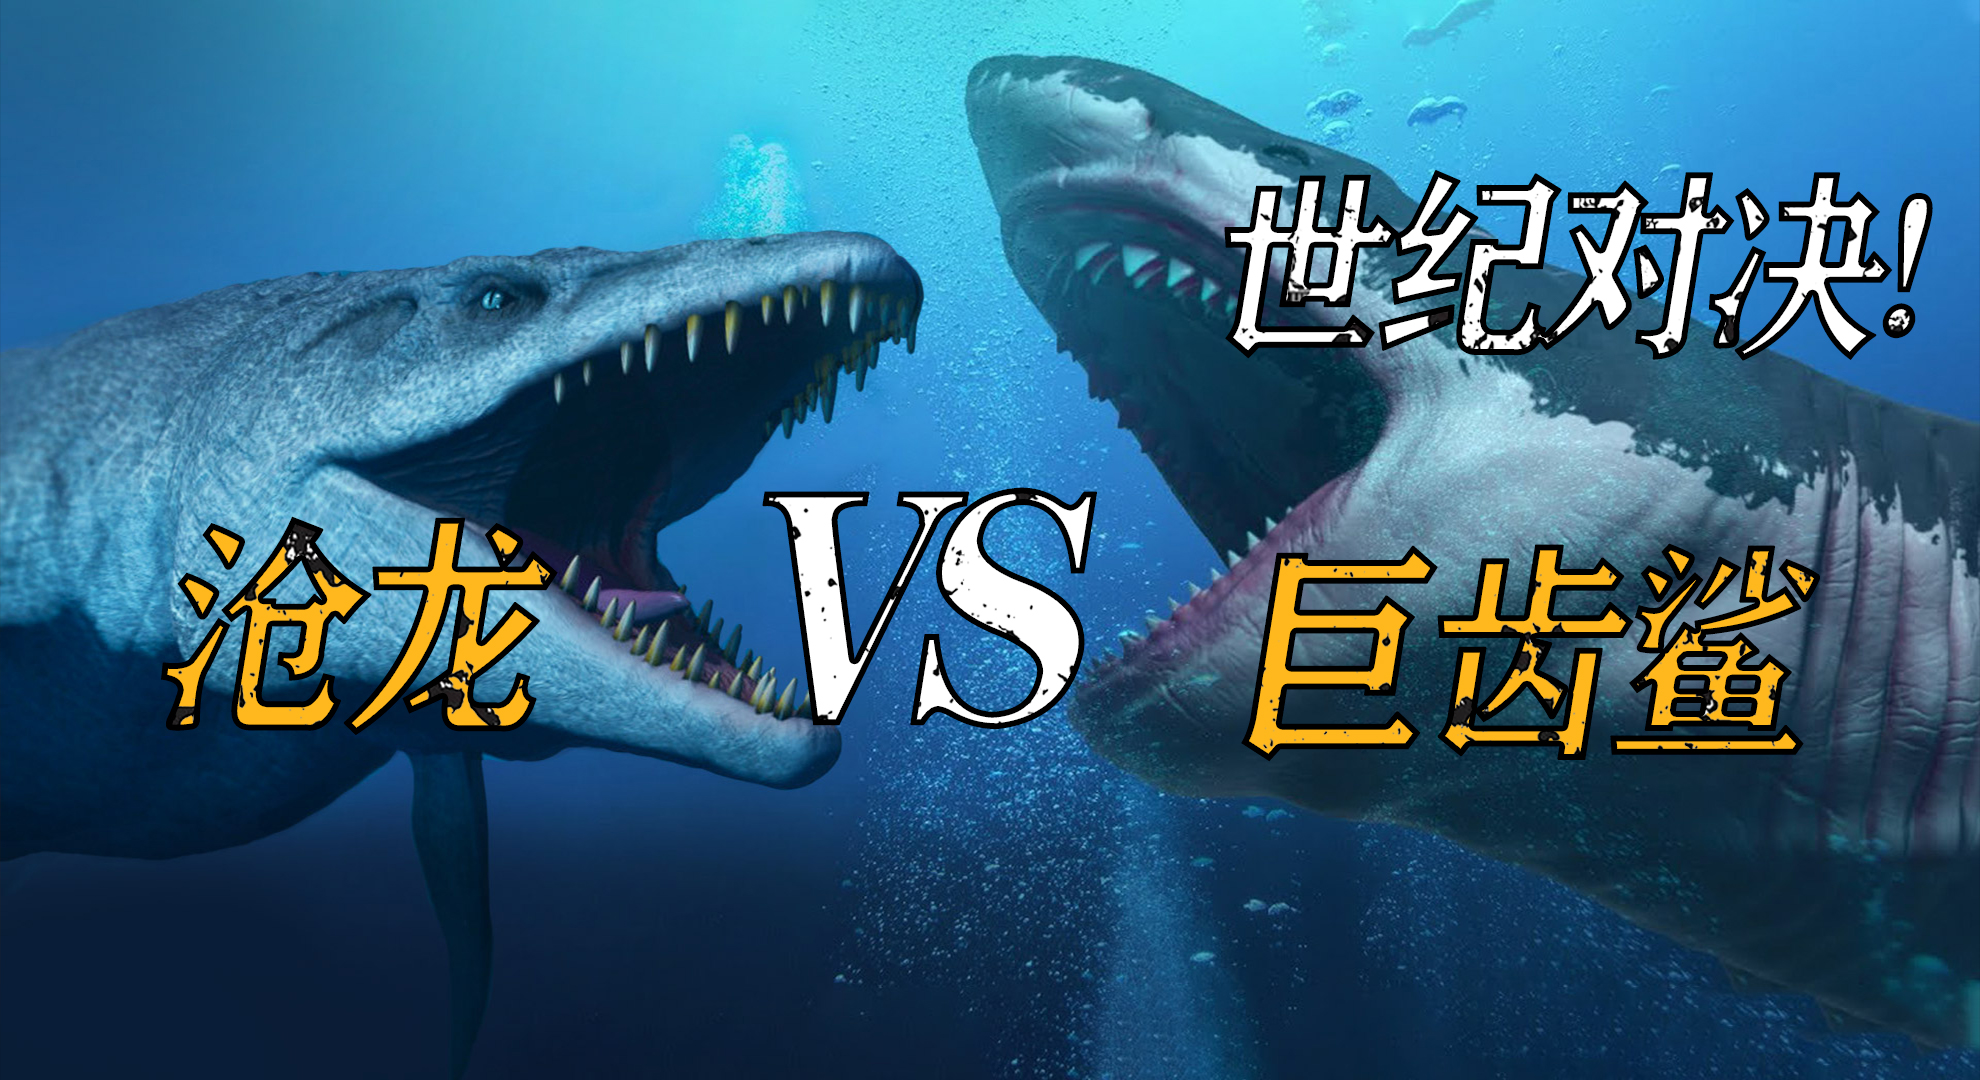 巨齿鲨大战沧龙图片